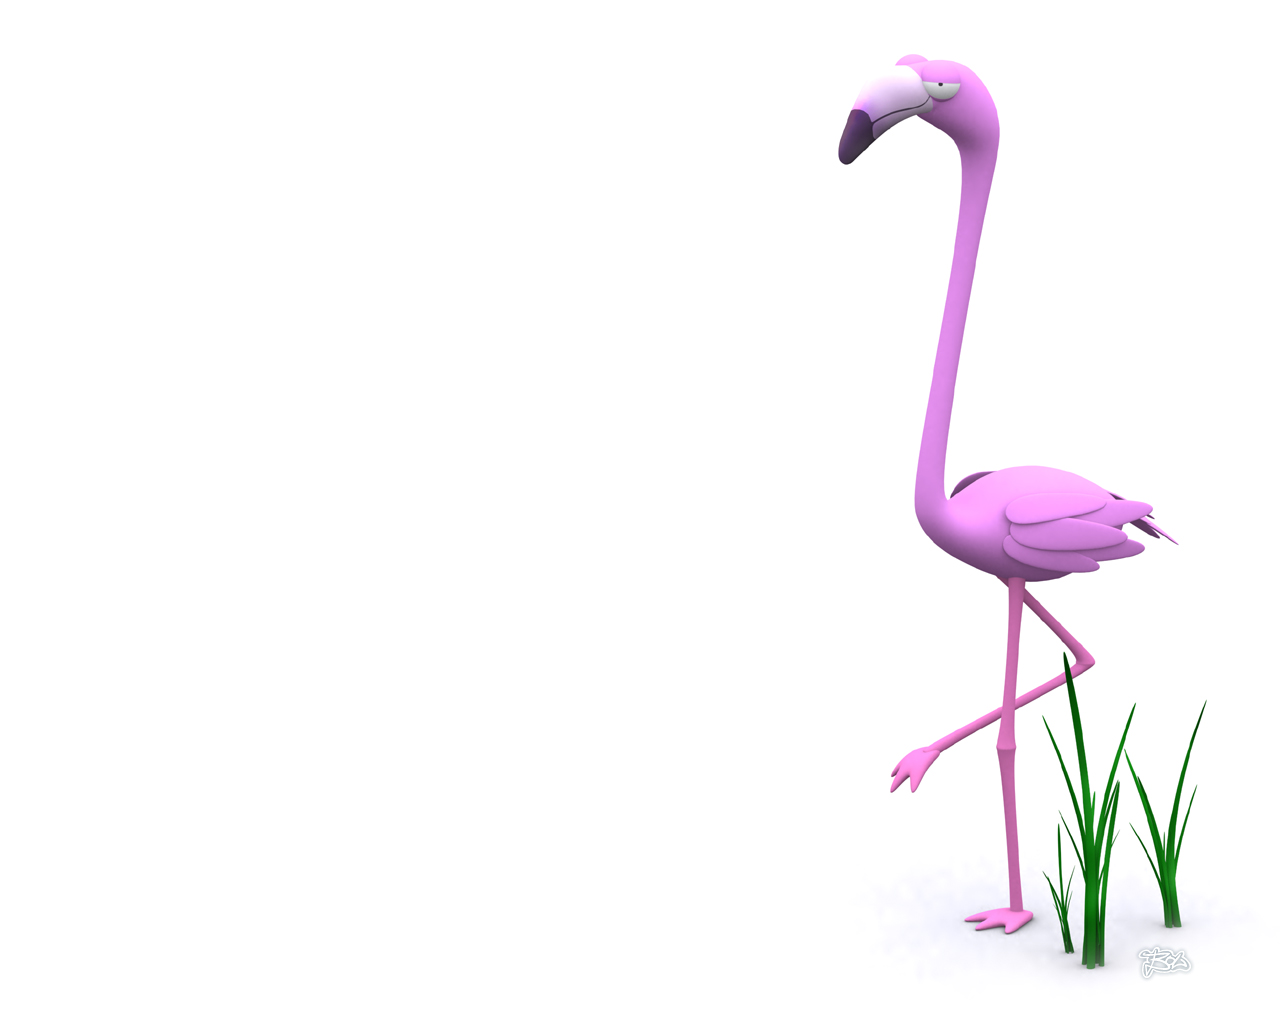 flamingo wallpaper hd desktop - Clip Art Library